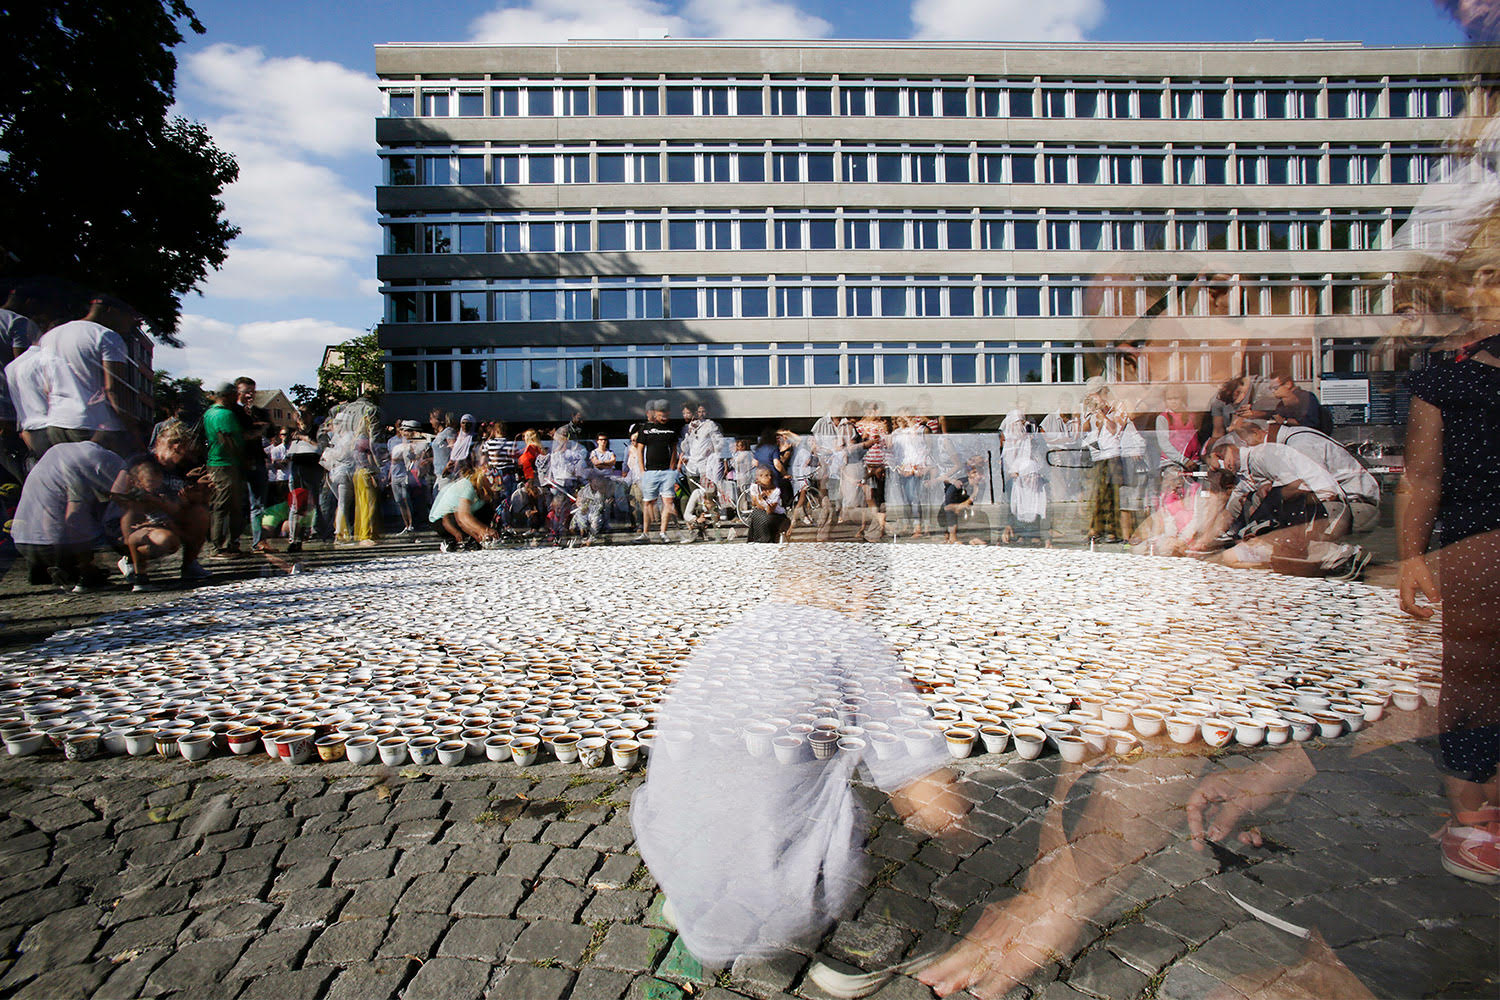 Nomadski spomenik ŠTO TE NEMA na Helvetiaplatz-u u Cirihu 11. jula 2018. godine. Foto Sabine Roeck. ©AidaSehovic